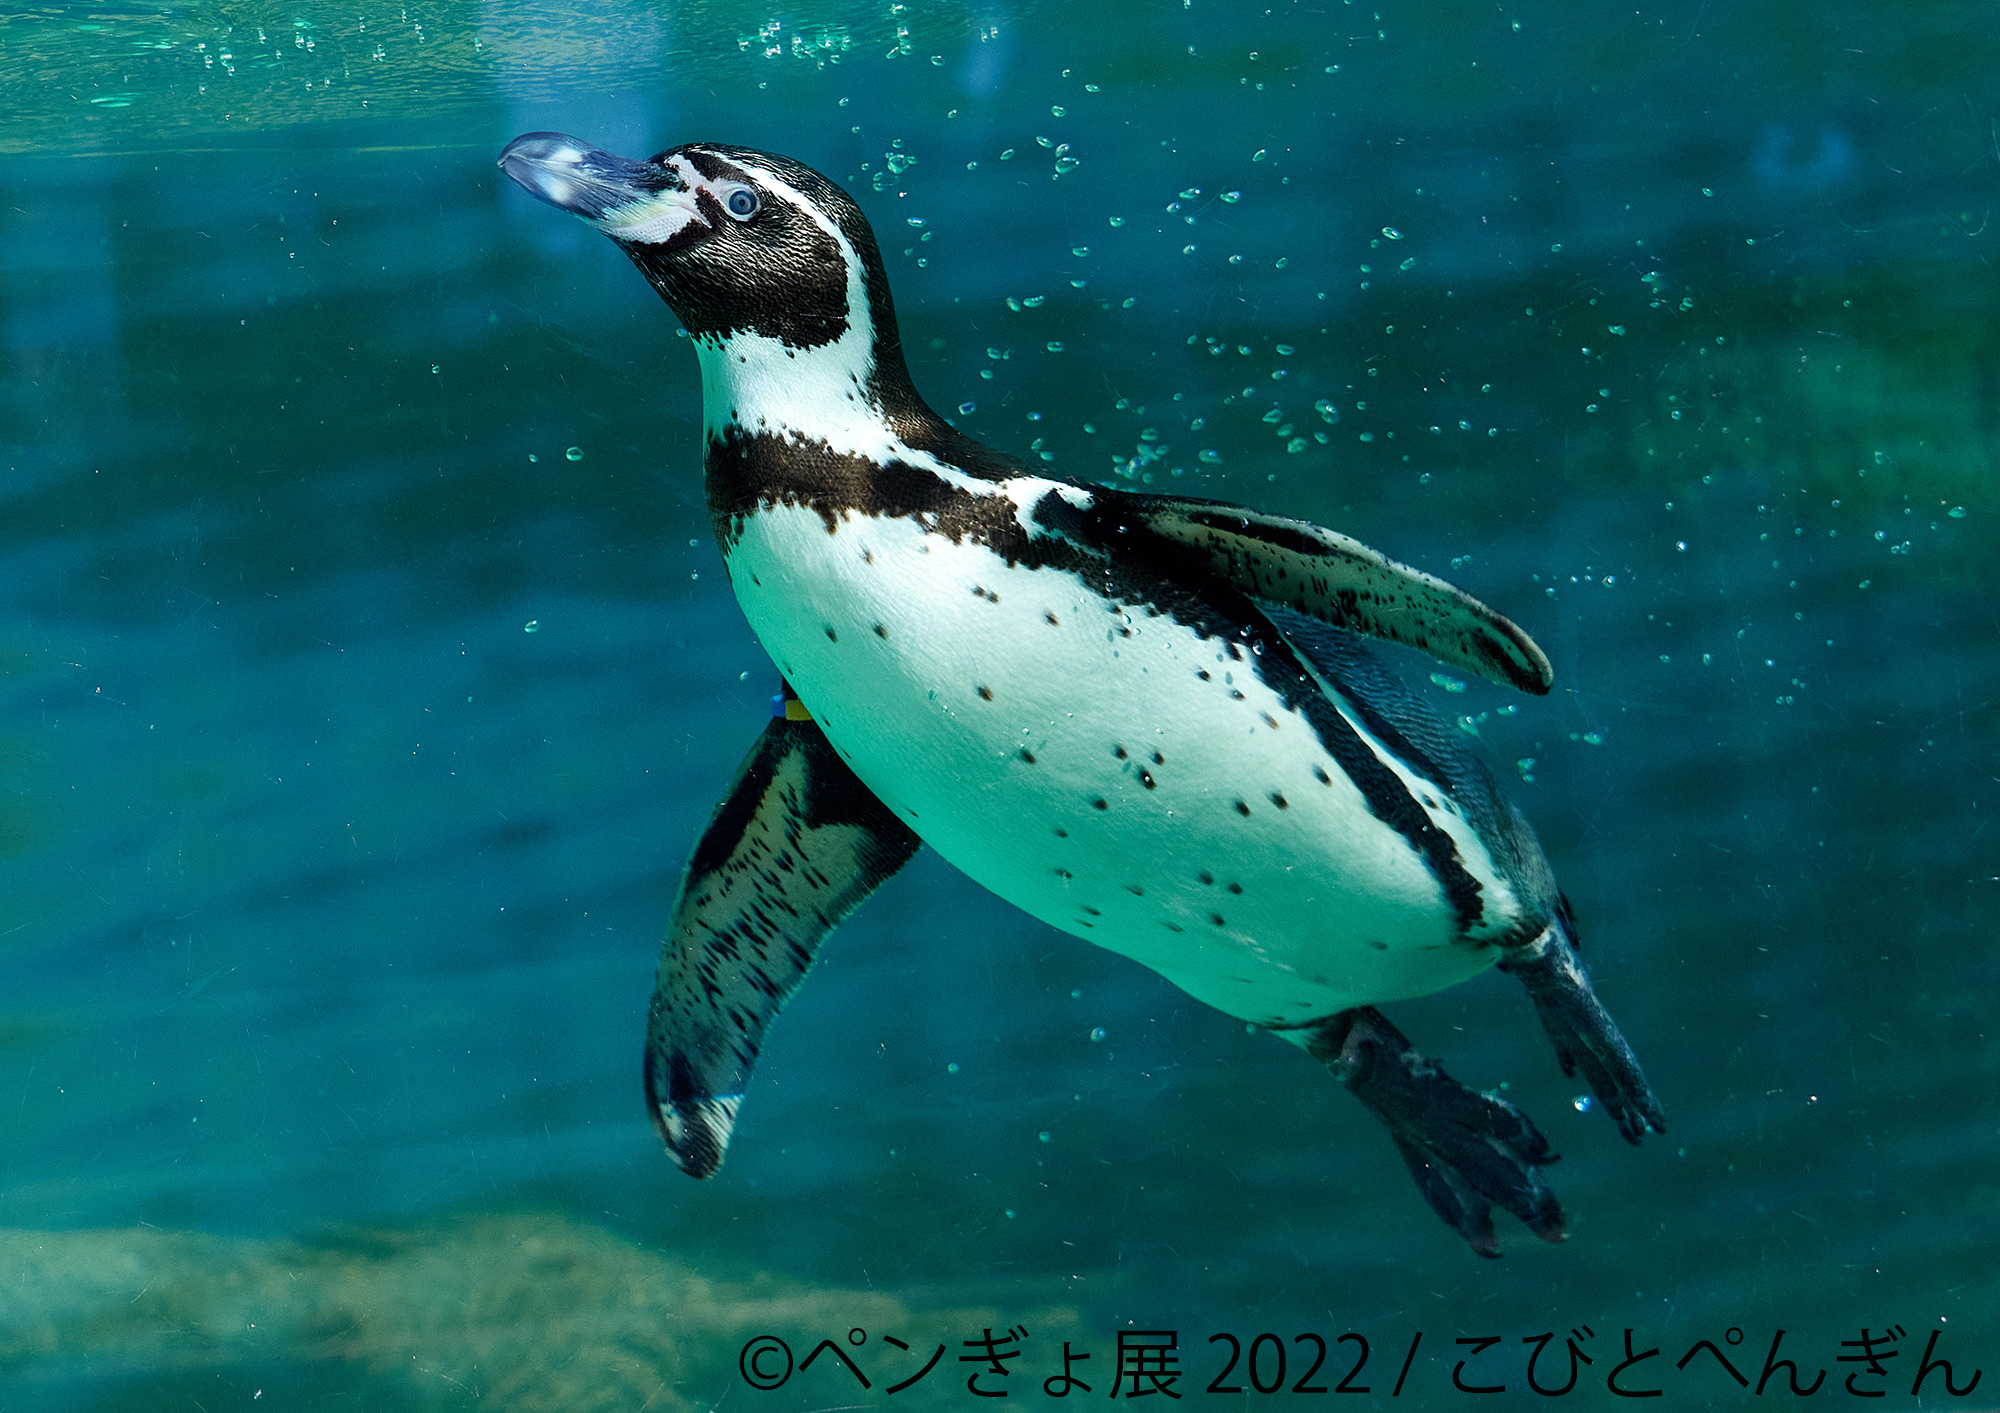 ペンギン 金魚の競演 ペンぎょ展 22 が東京 名古屋 福岡で開催 動物のリアルを伝えるwebメディア Reanimal